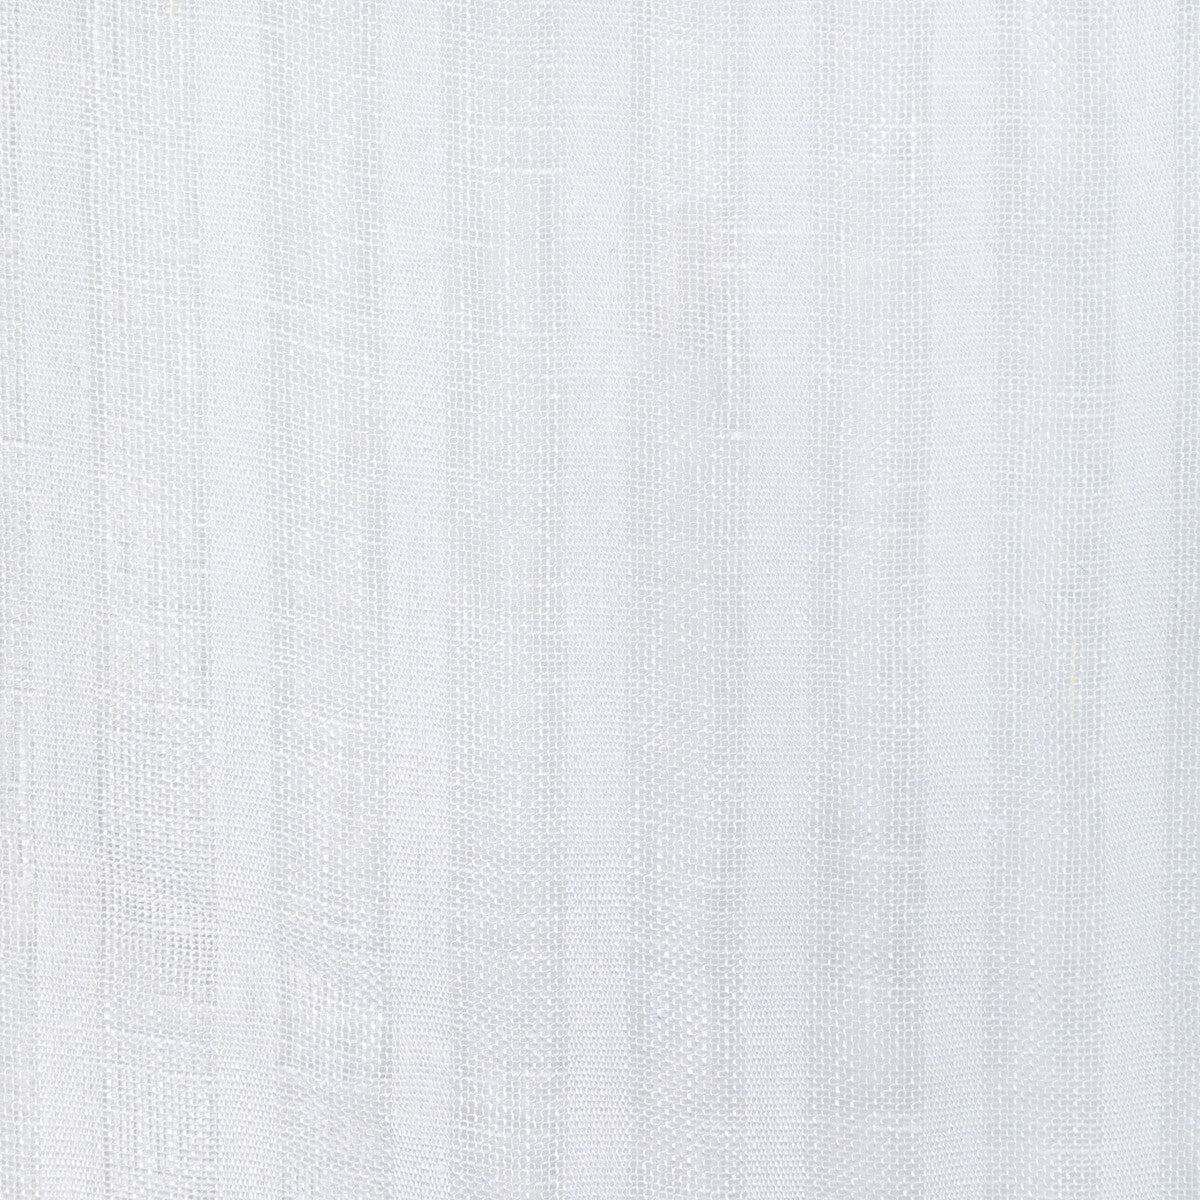 Kravet Basics fabric in 4944-1 color - pattern 4944.1.0 - by Kravet Basics